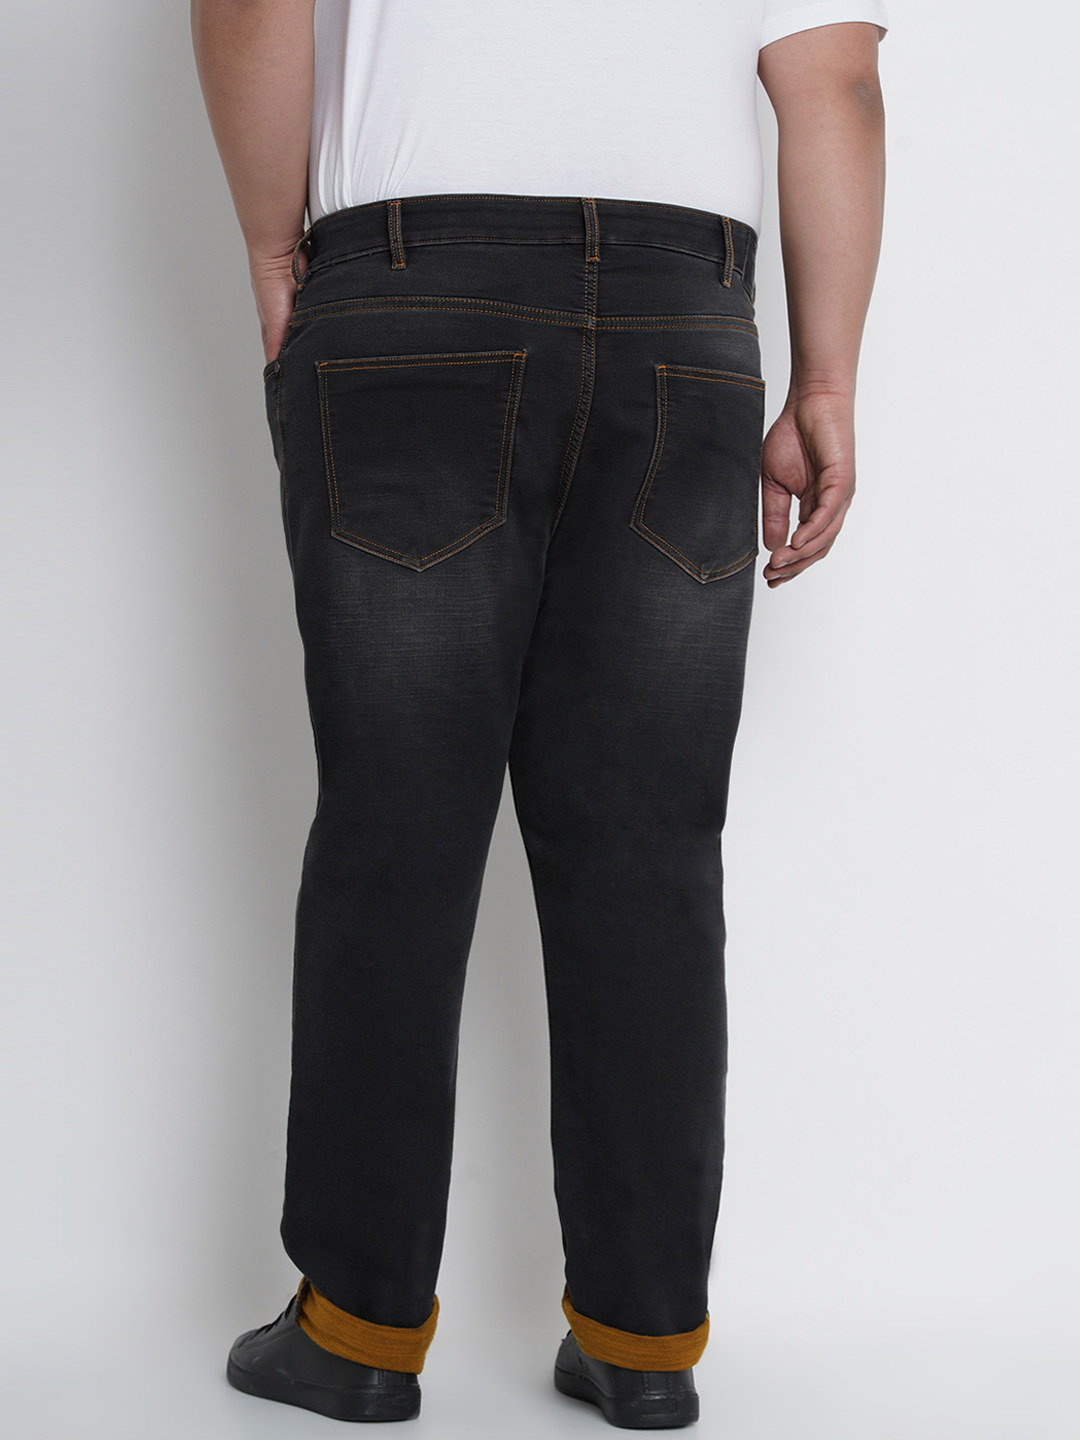 bottomwear/jeans/JPJ12124/jpj12124-4.jpg